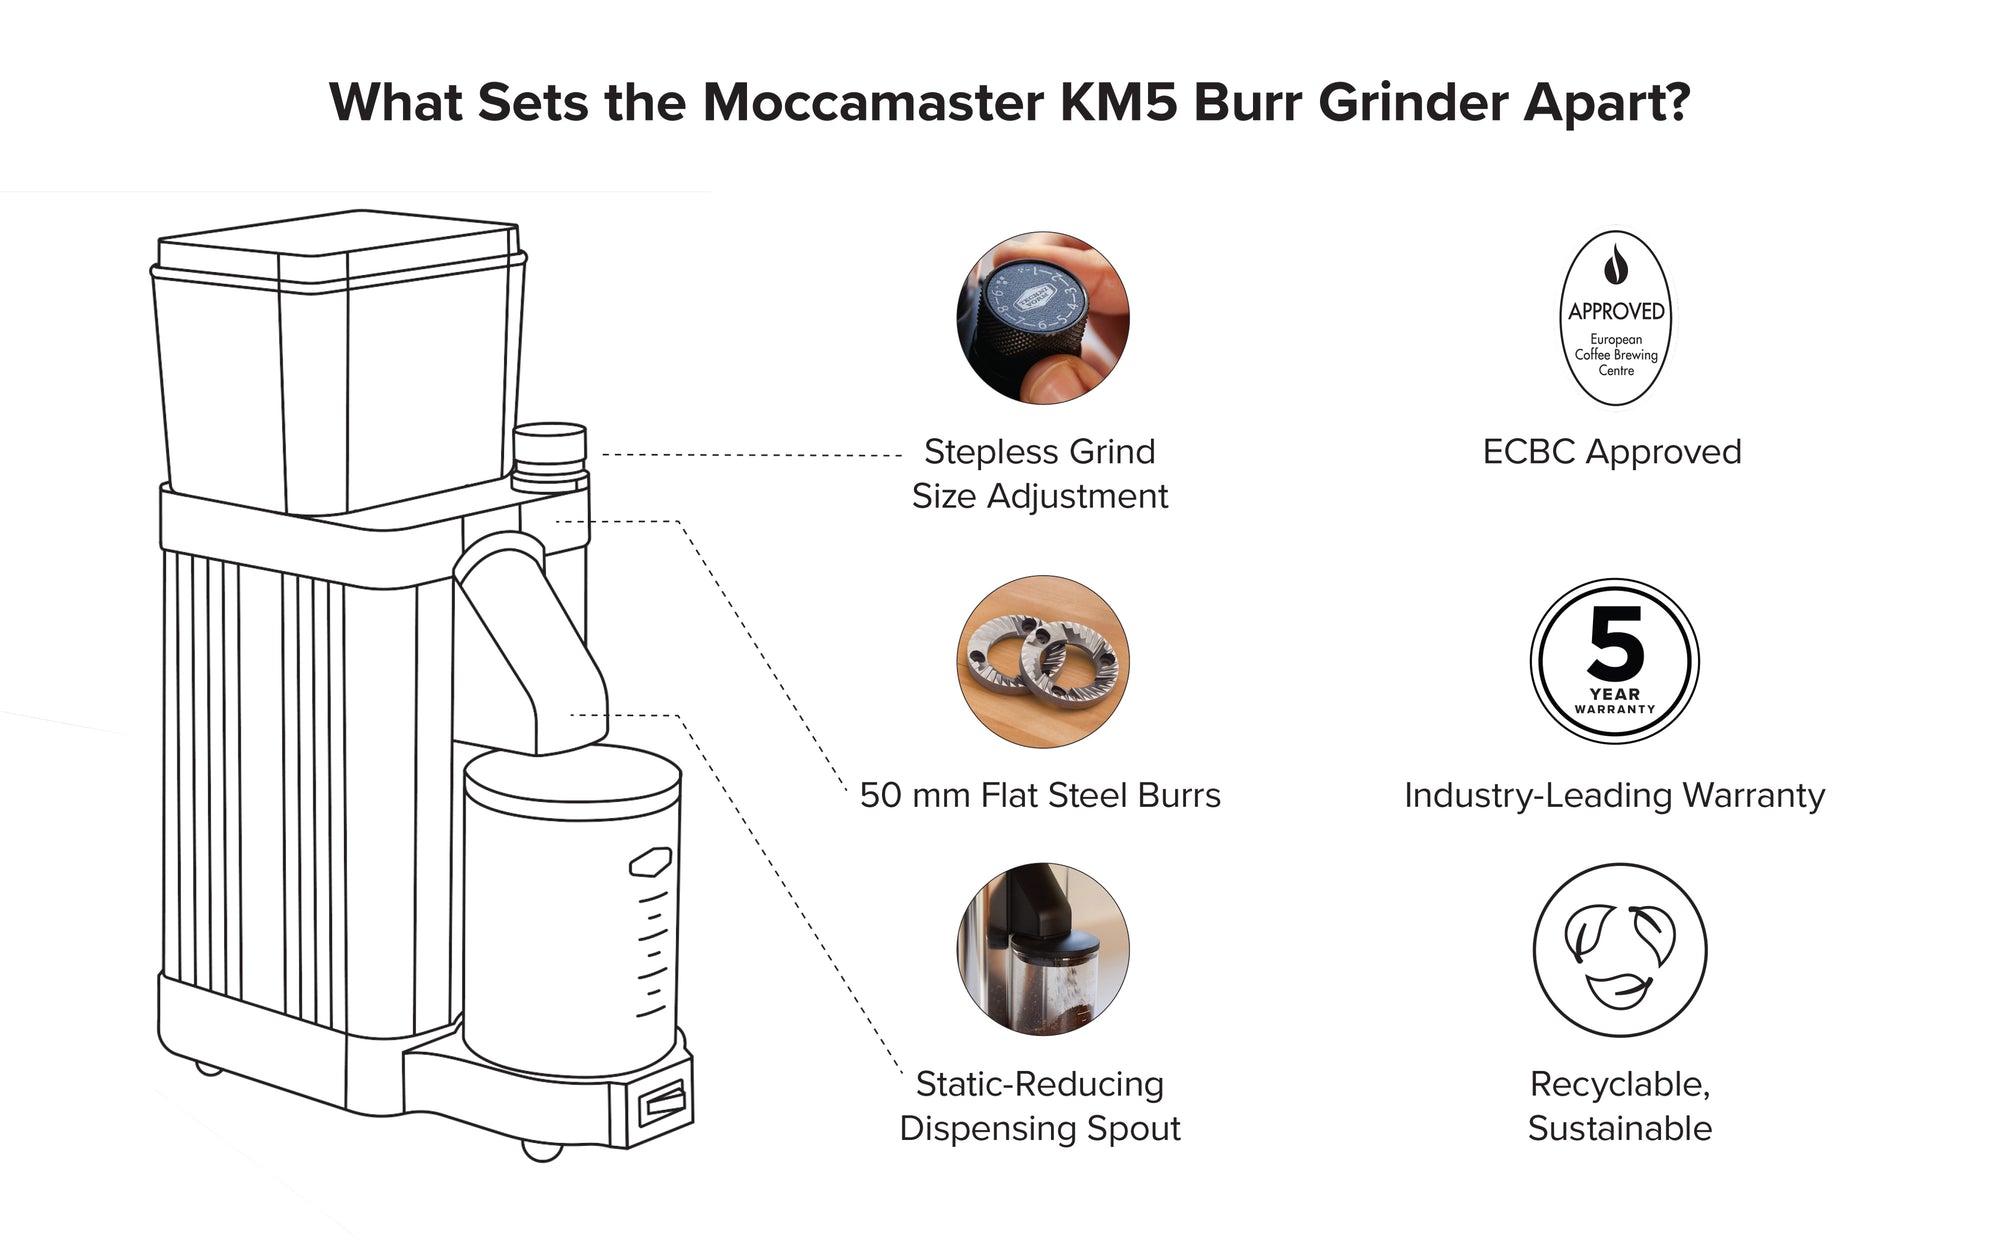 High End Coffee Grinder: Moccamaster KM5 Burr Grinder